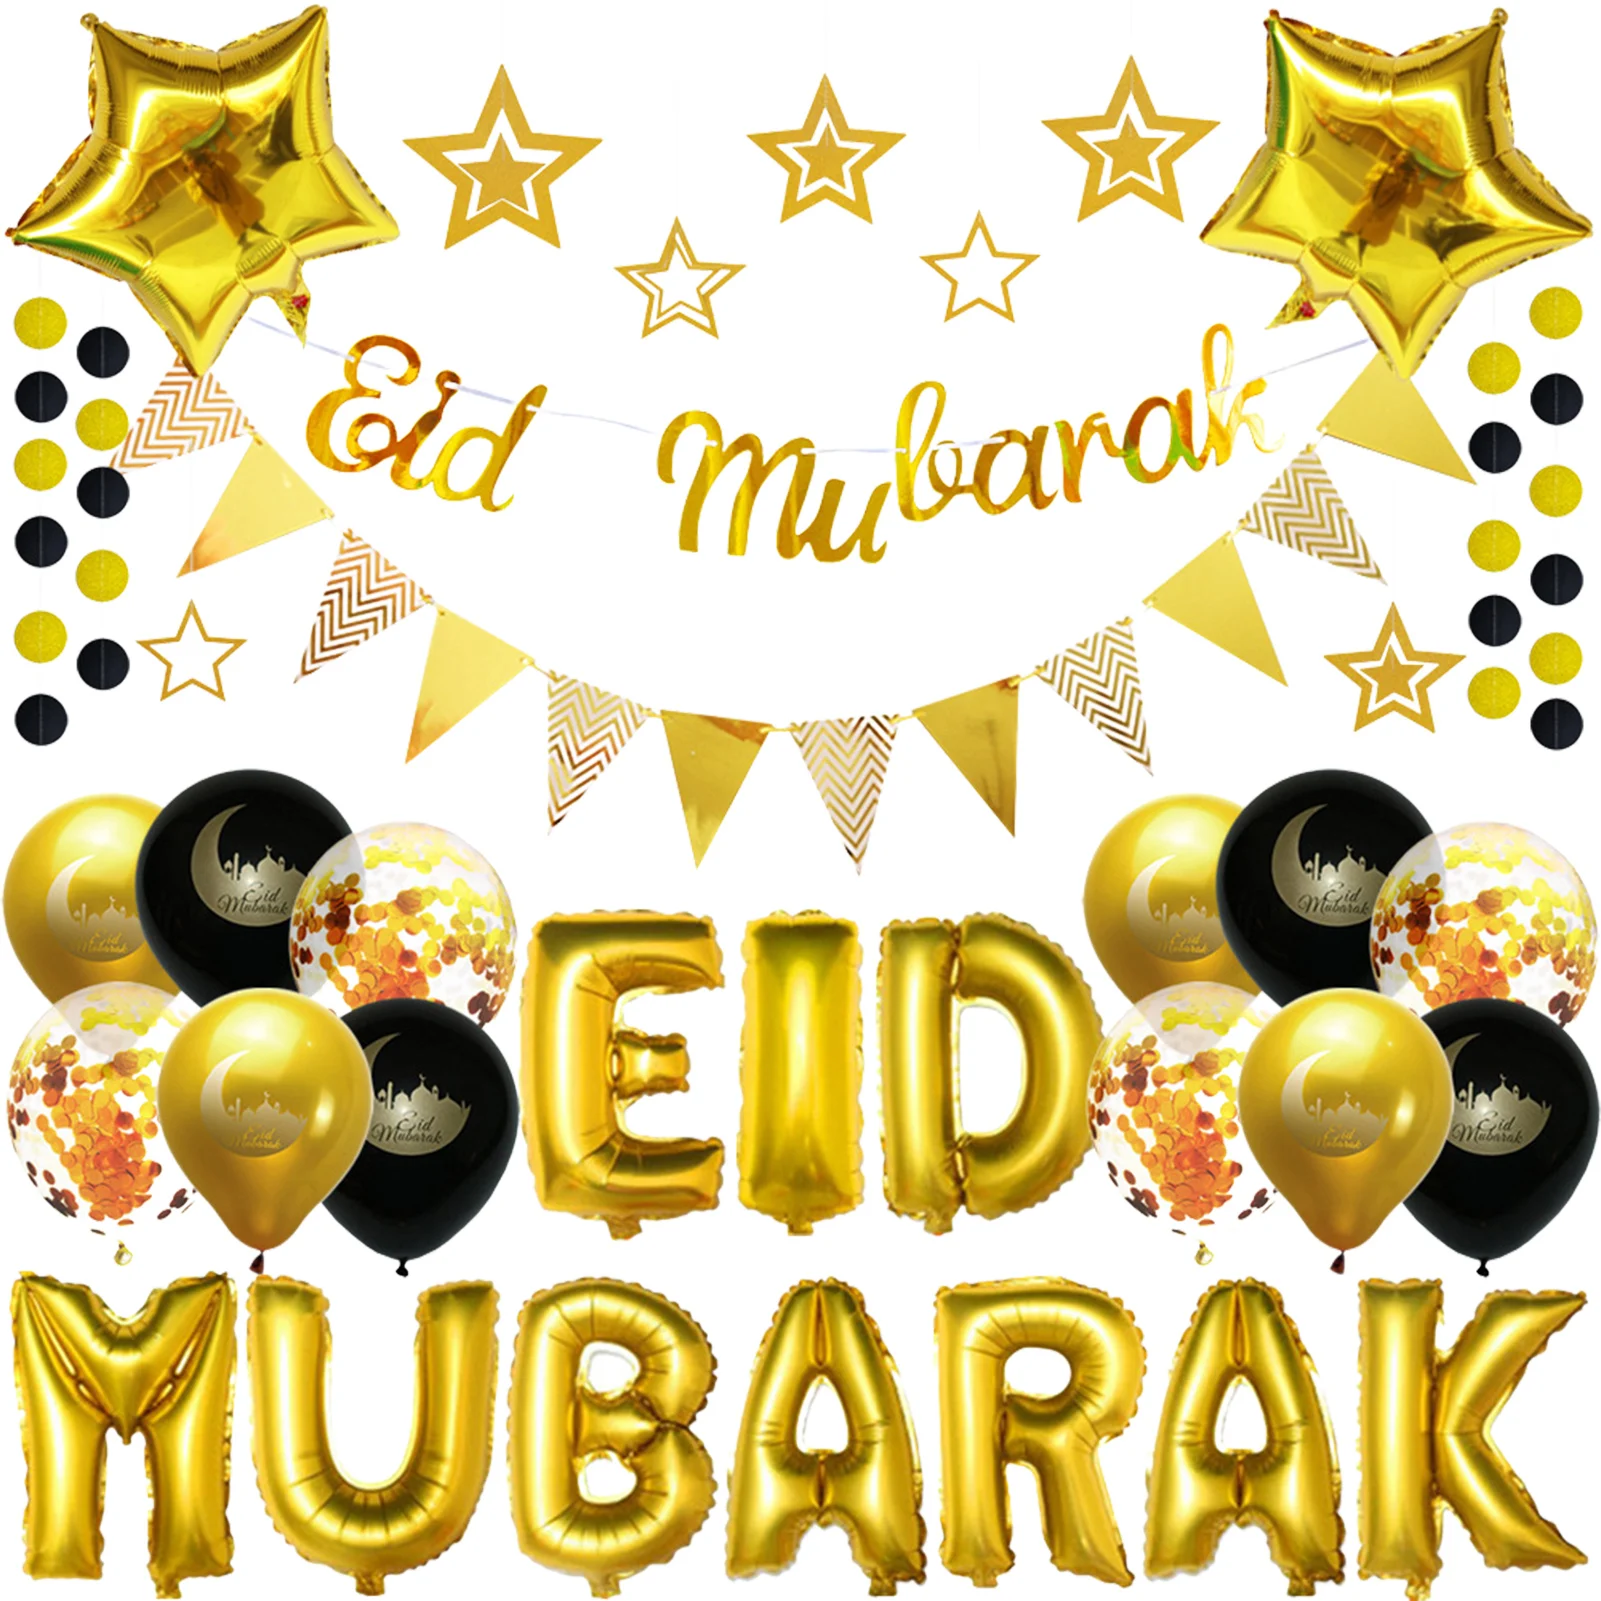 

ИД Мубарак, баннер, воздушные шары, украшение для торта, яркий Рамадан, кареем, Мусульманский Исламский фестиваль, яркий